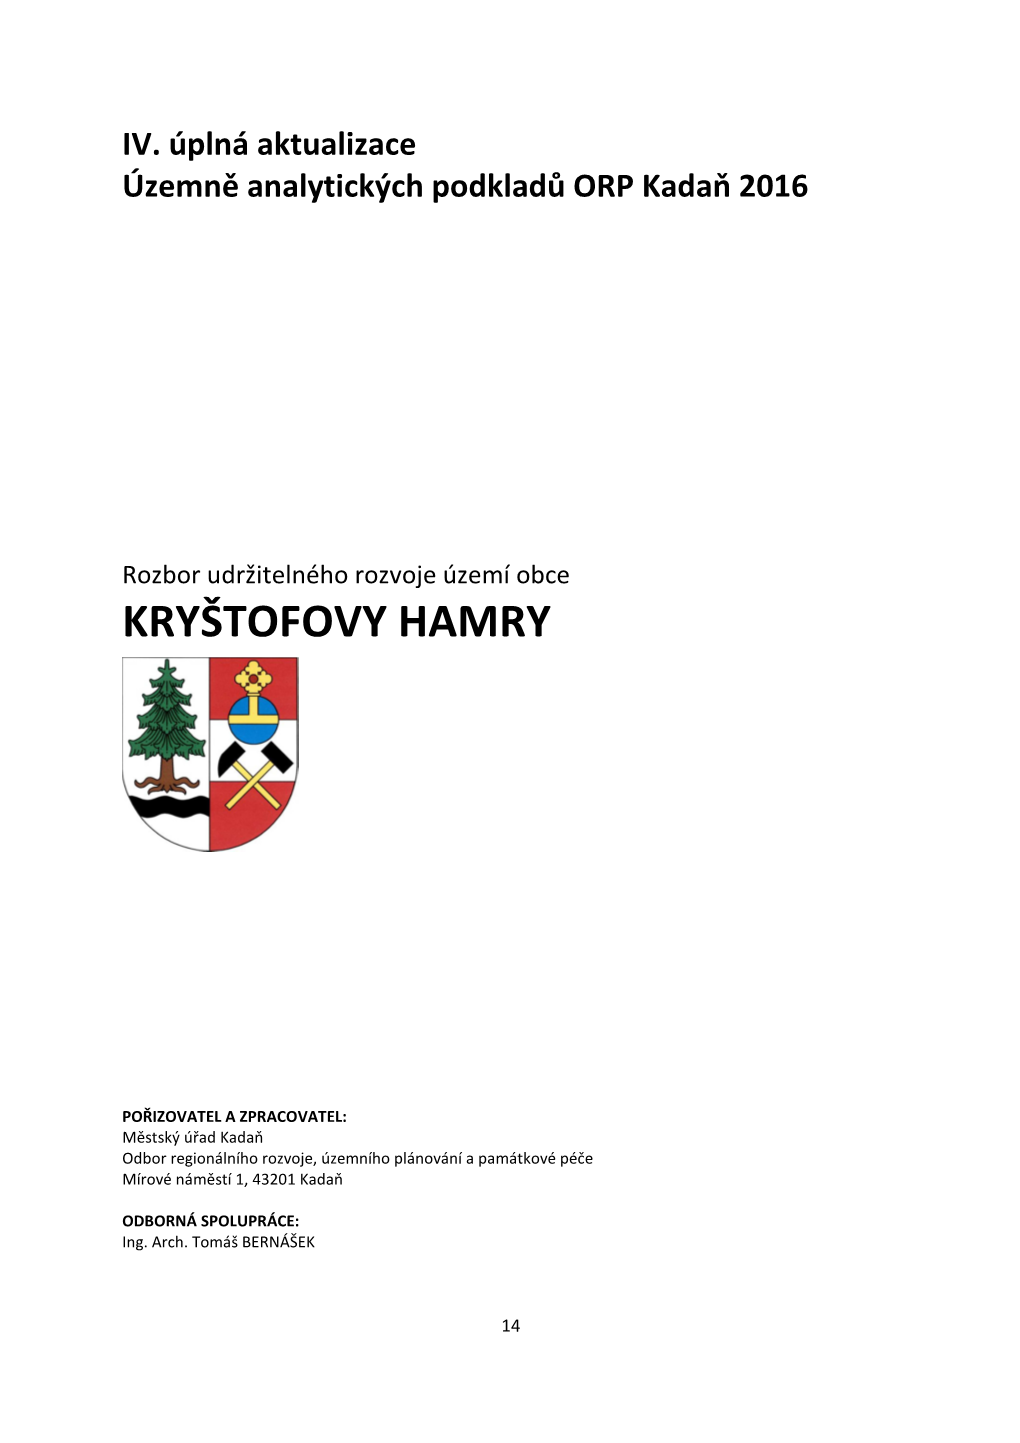 Kryštofovy Hamry